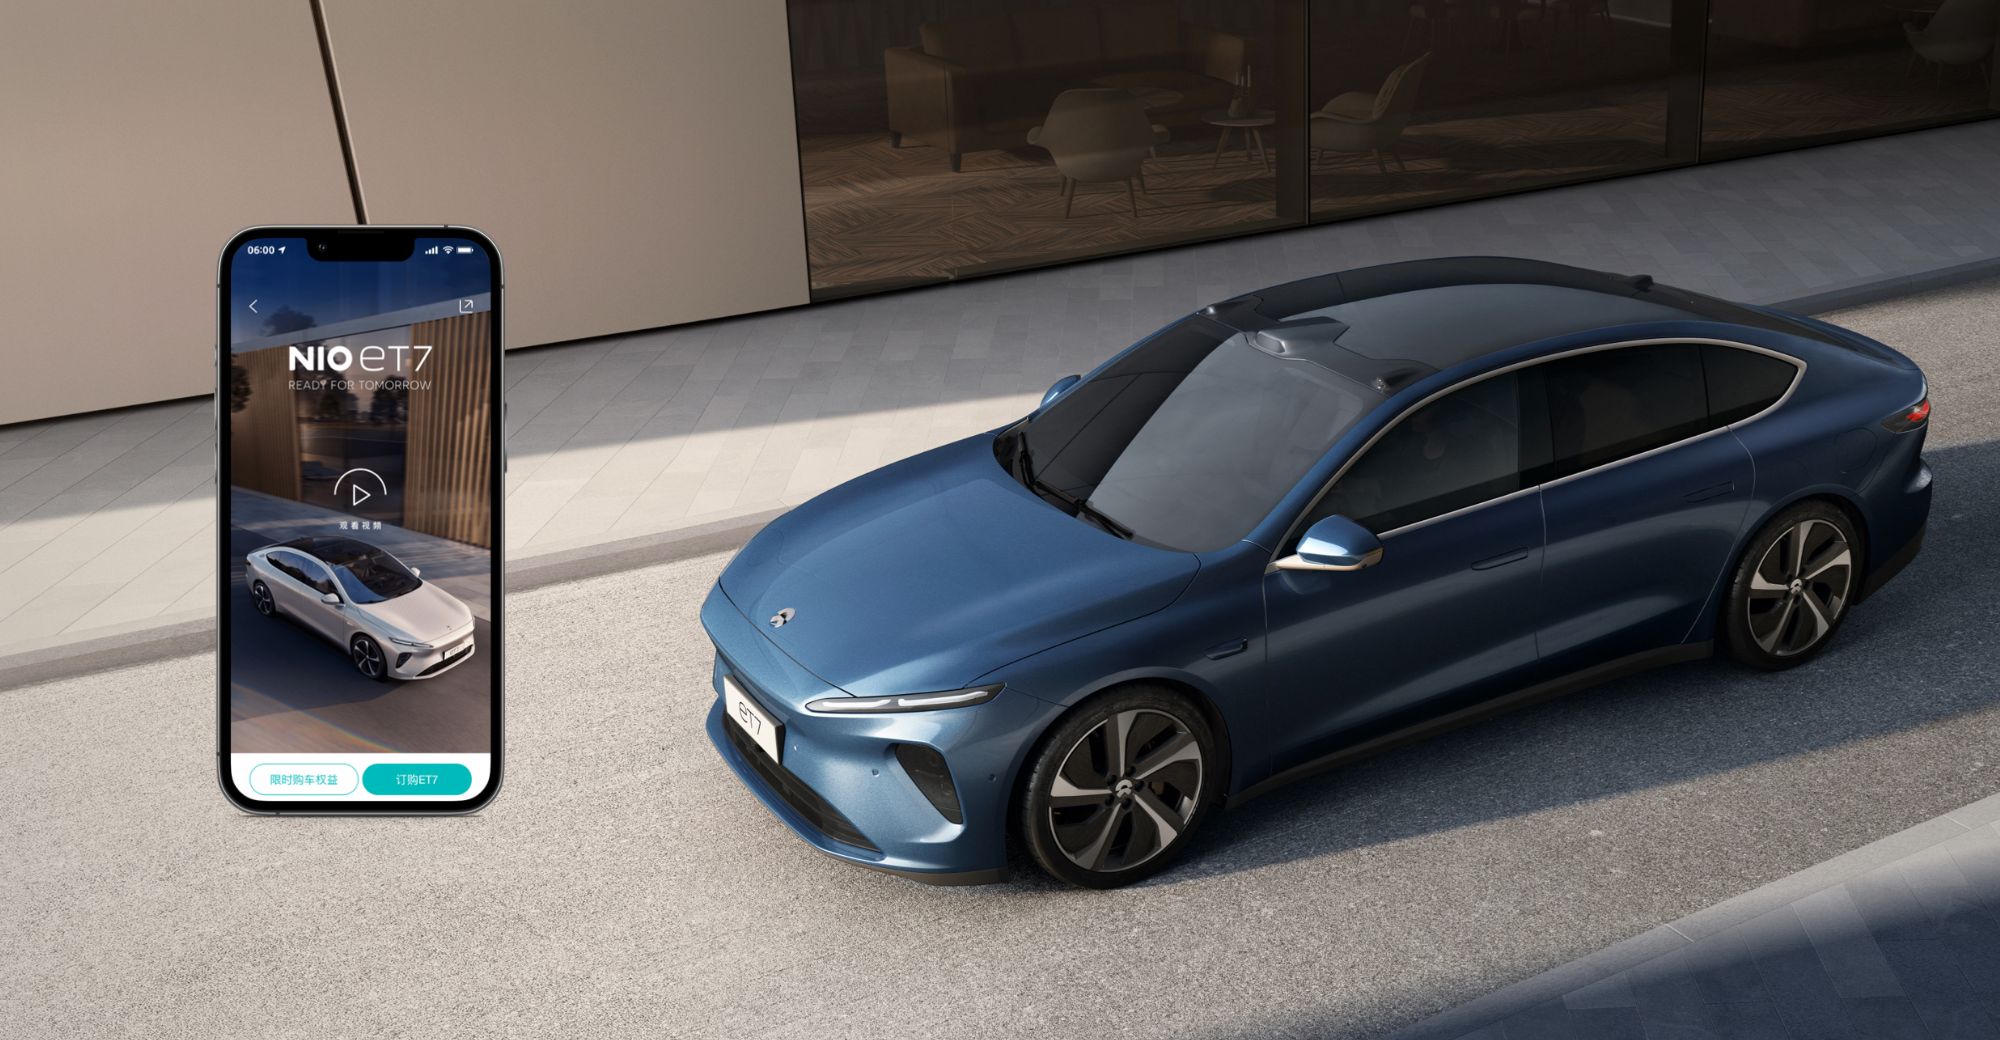 Le résultat du mécontentement à l'égard des gadgets d'Apple : le constructeur de voitures électriques Nio teste déjà son premier smartphone